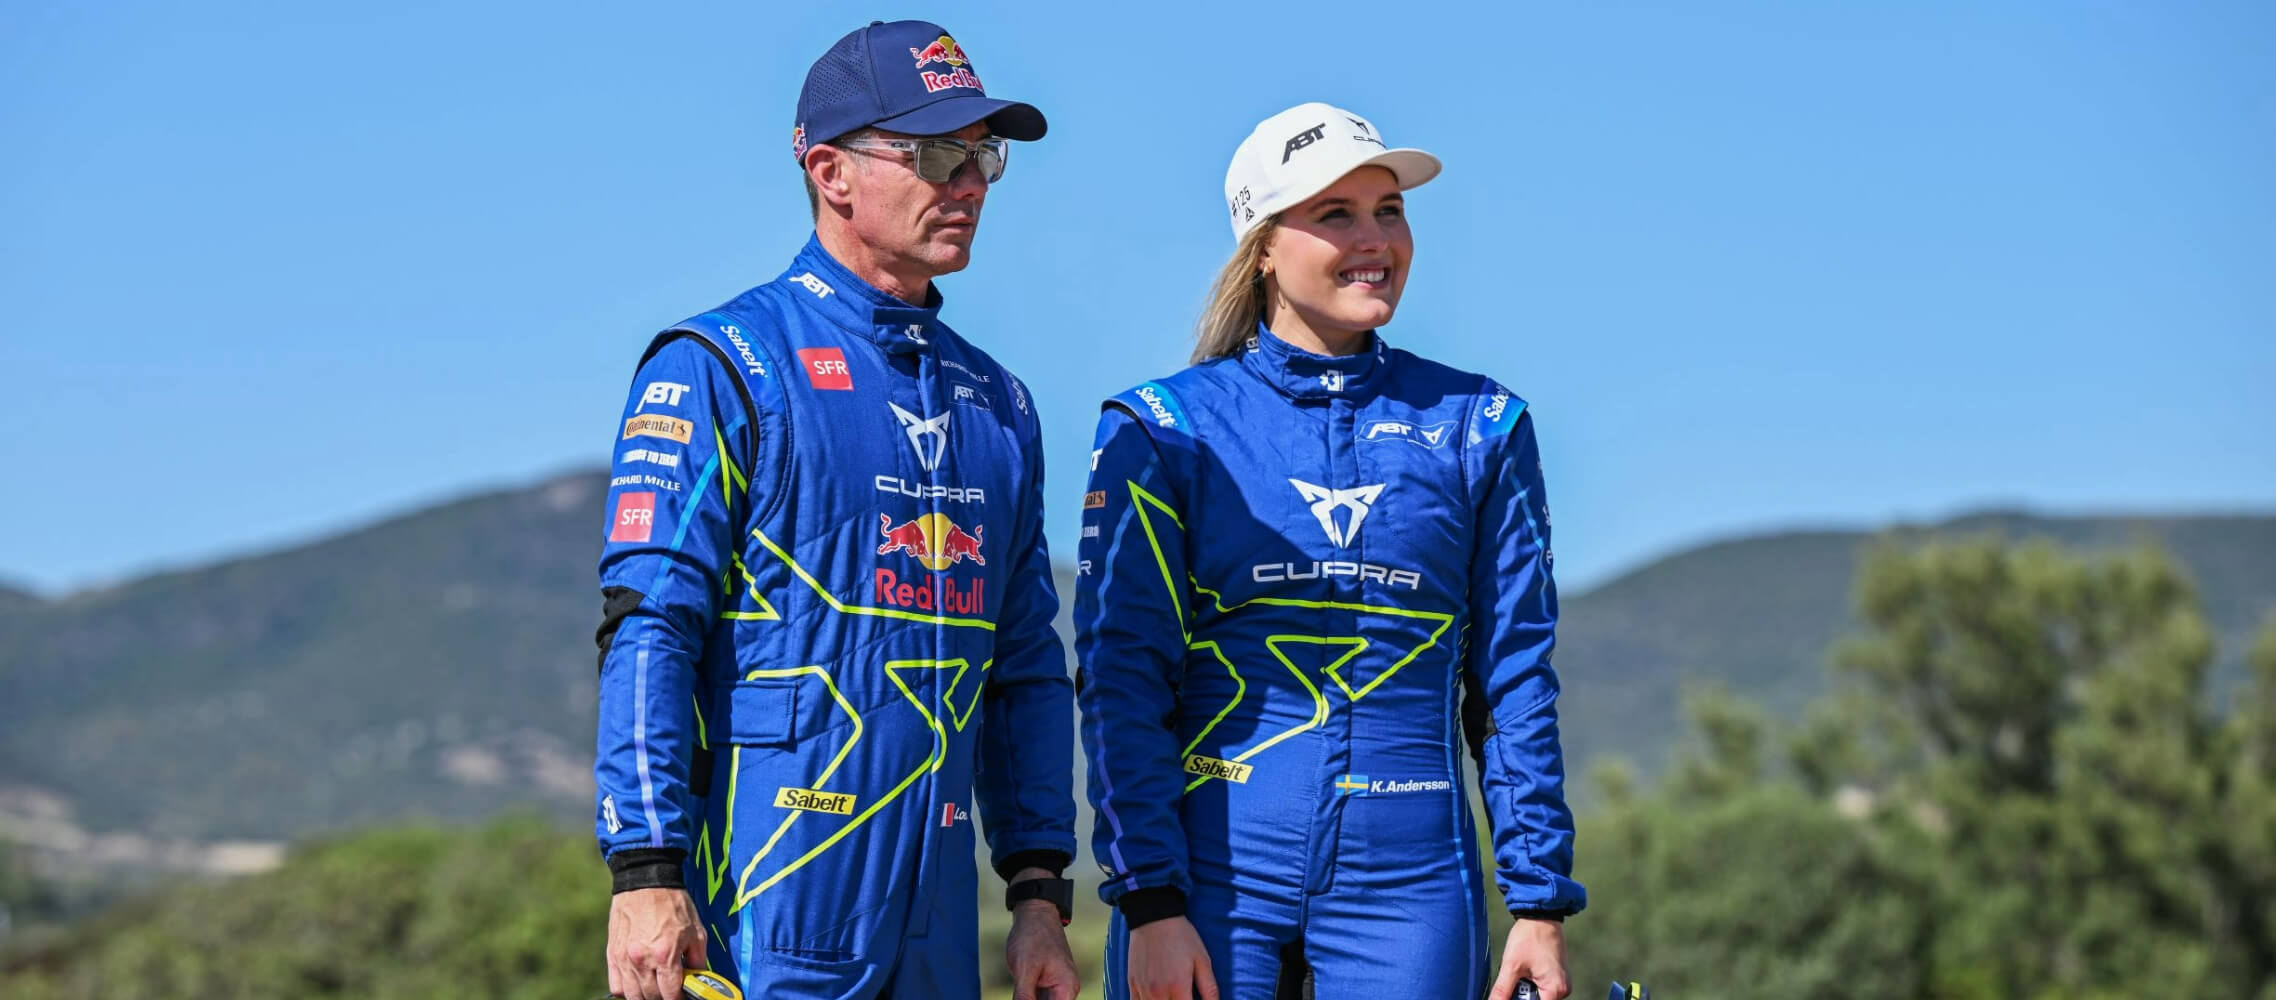 Klara Andersson and Sébastien Loeb